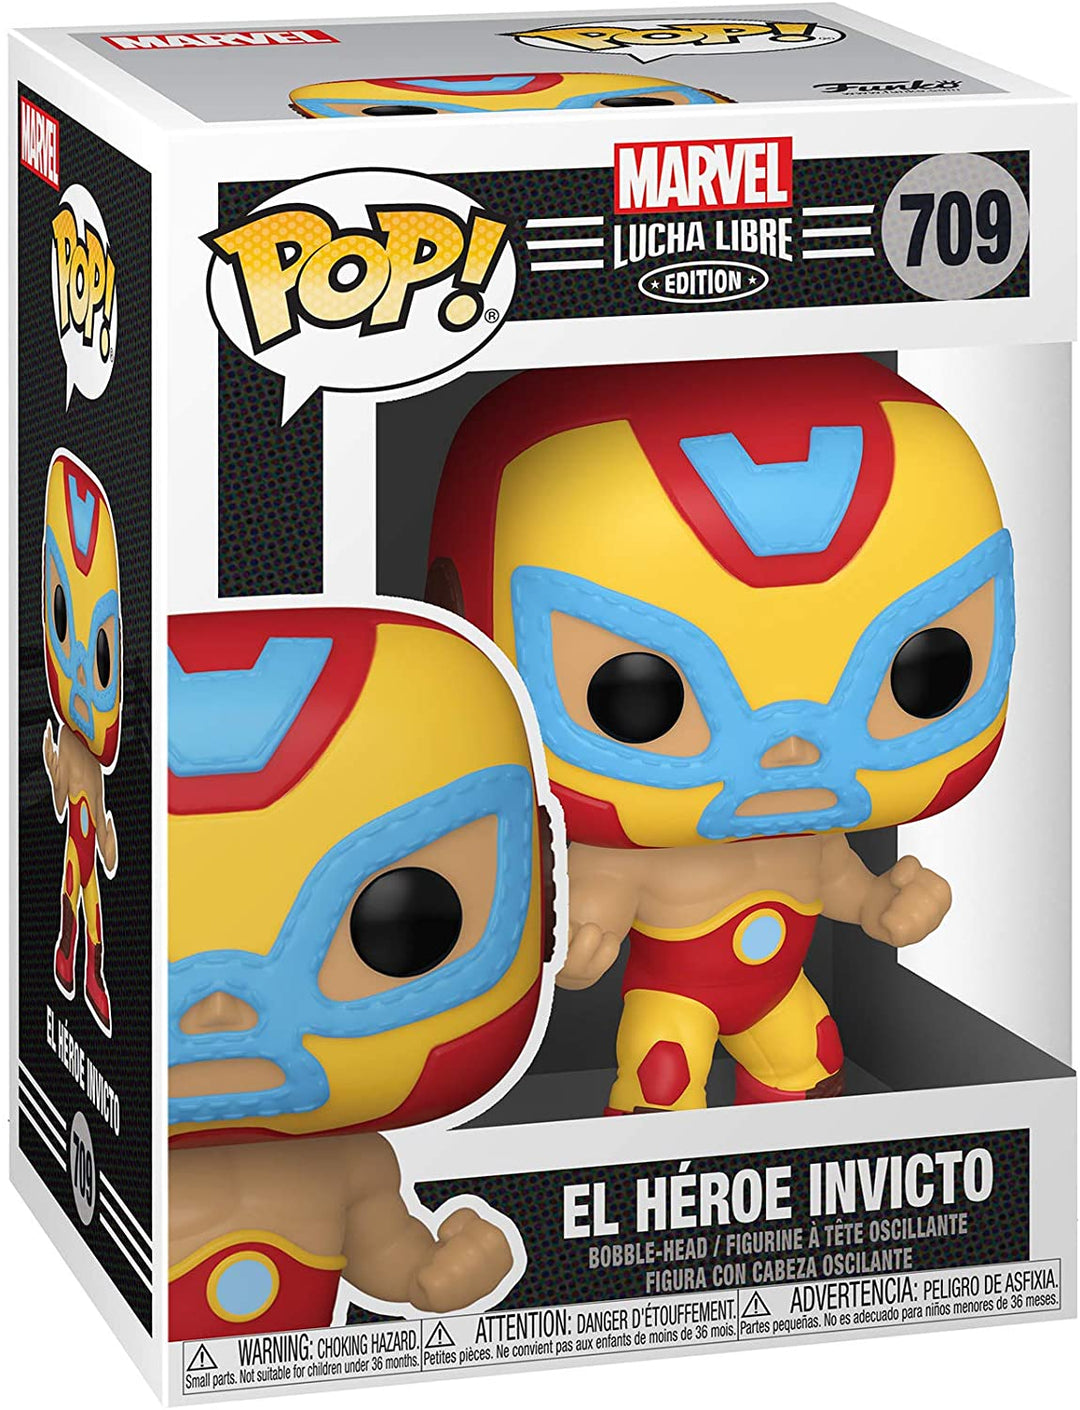 Marvel Lucha Libre Edition El Heroe Invicto Funko 53871 Pop! Vinilo n. ° 709